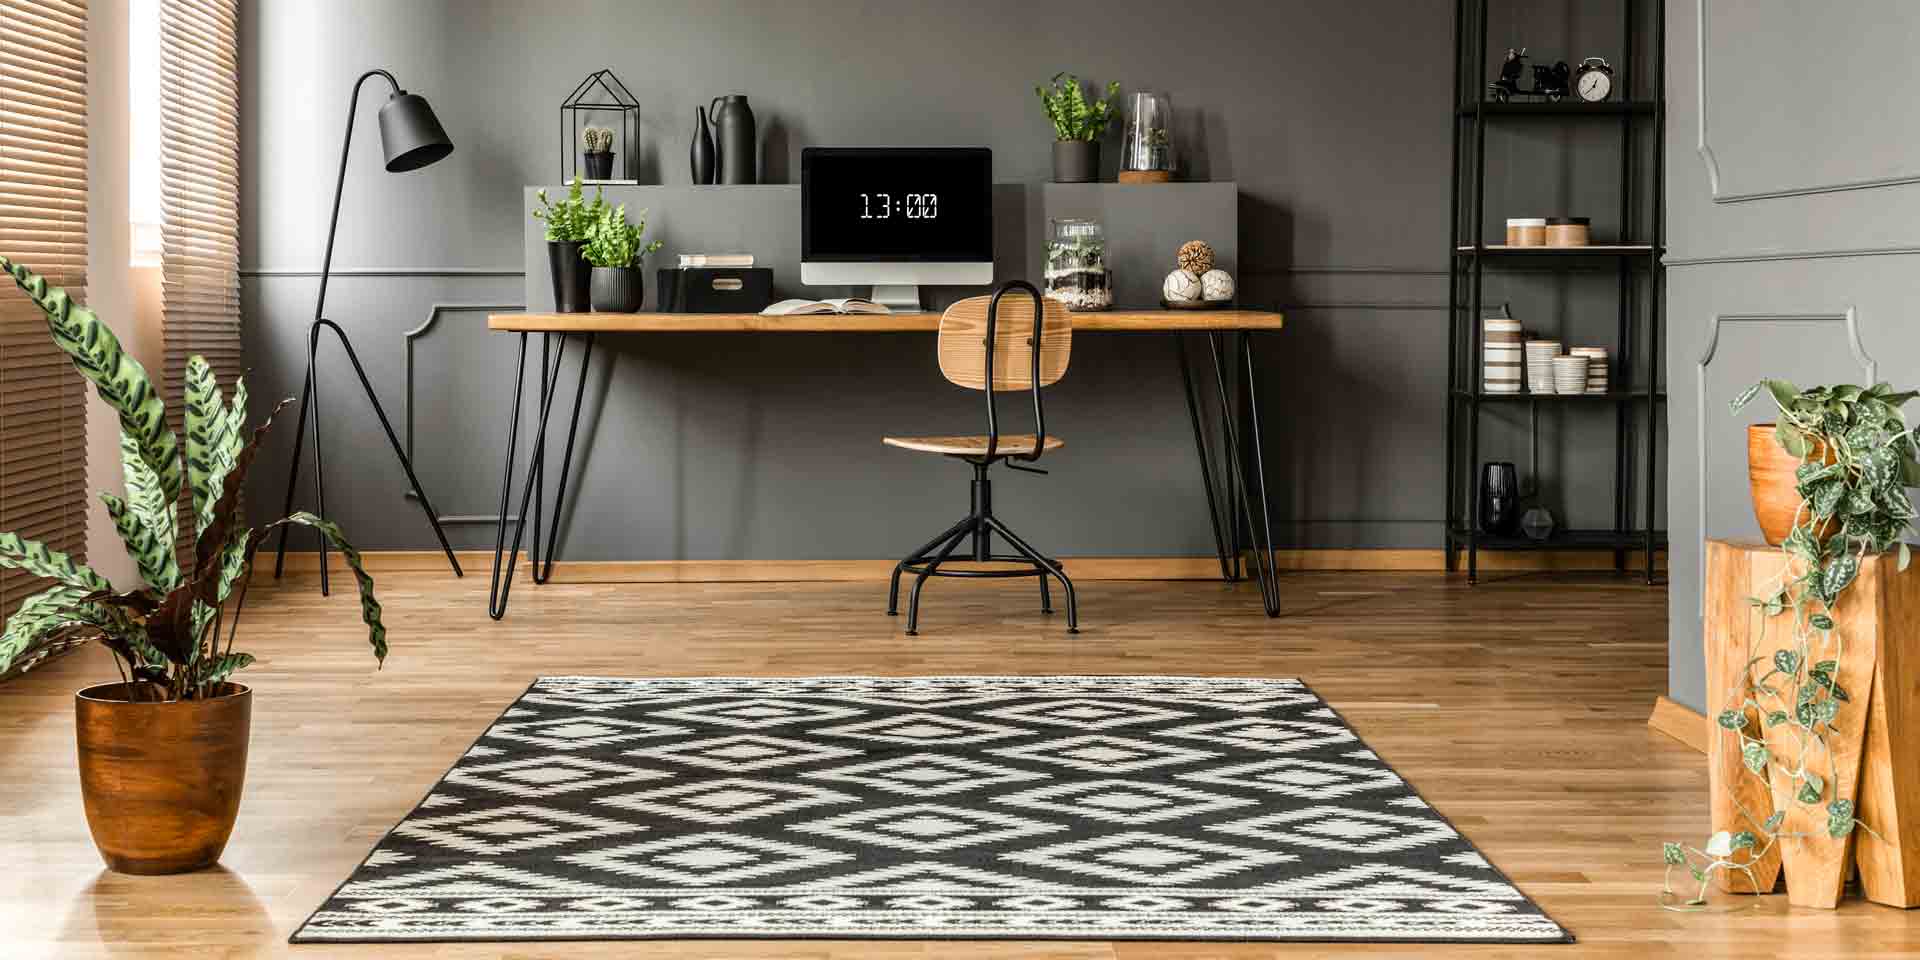 Teppich im Büro - Ja oder nein?